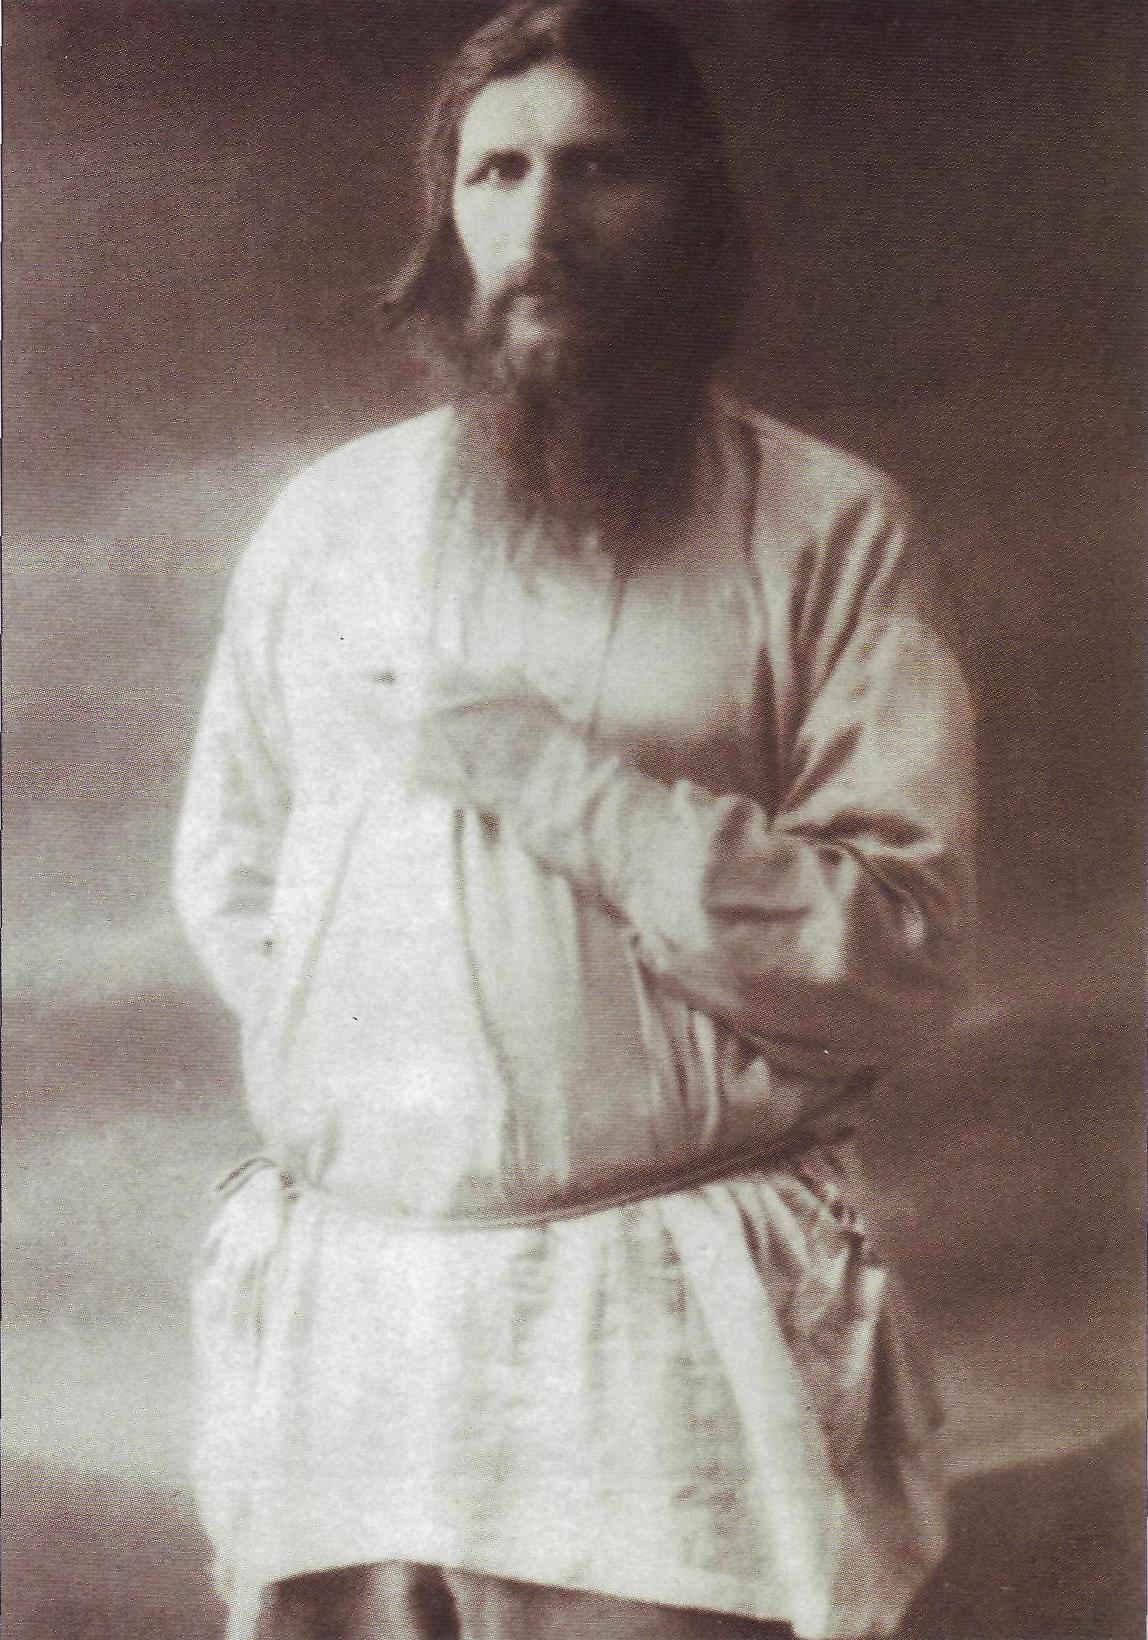 http://www.ic-xc-nika.ru/ikons/Grigorii_Rasputin/illustr/016b.jpg